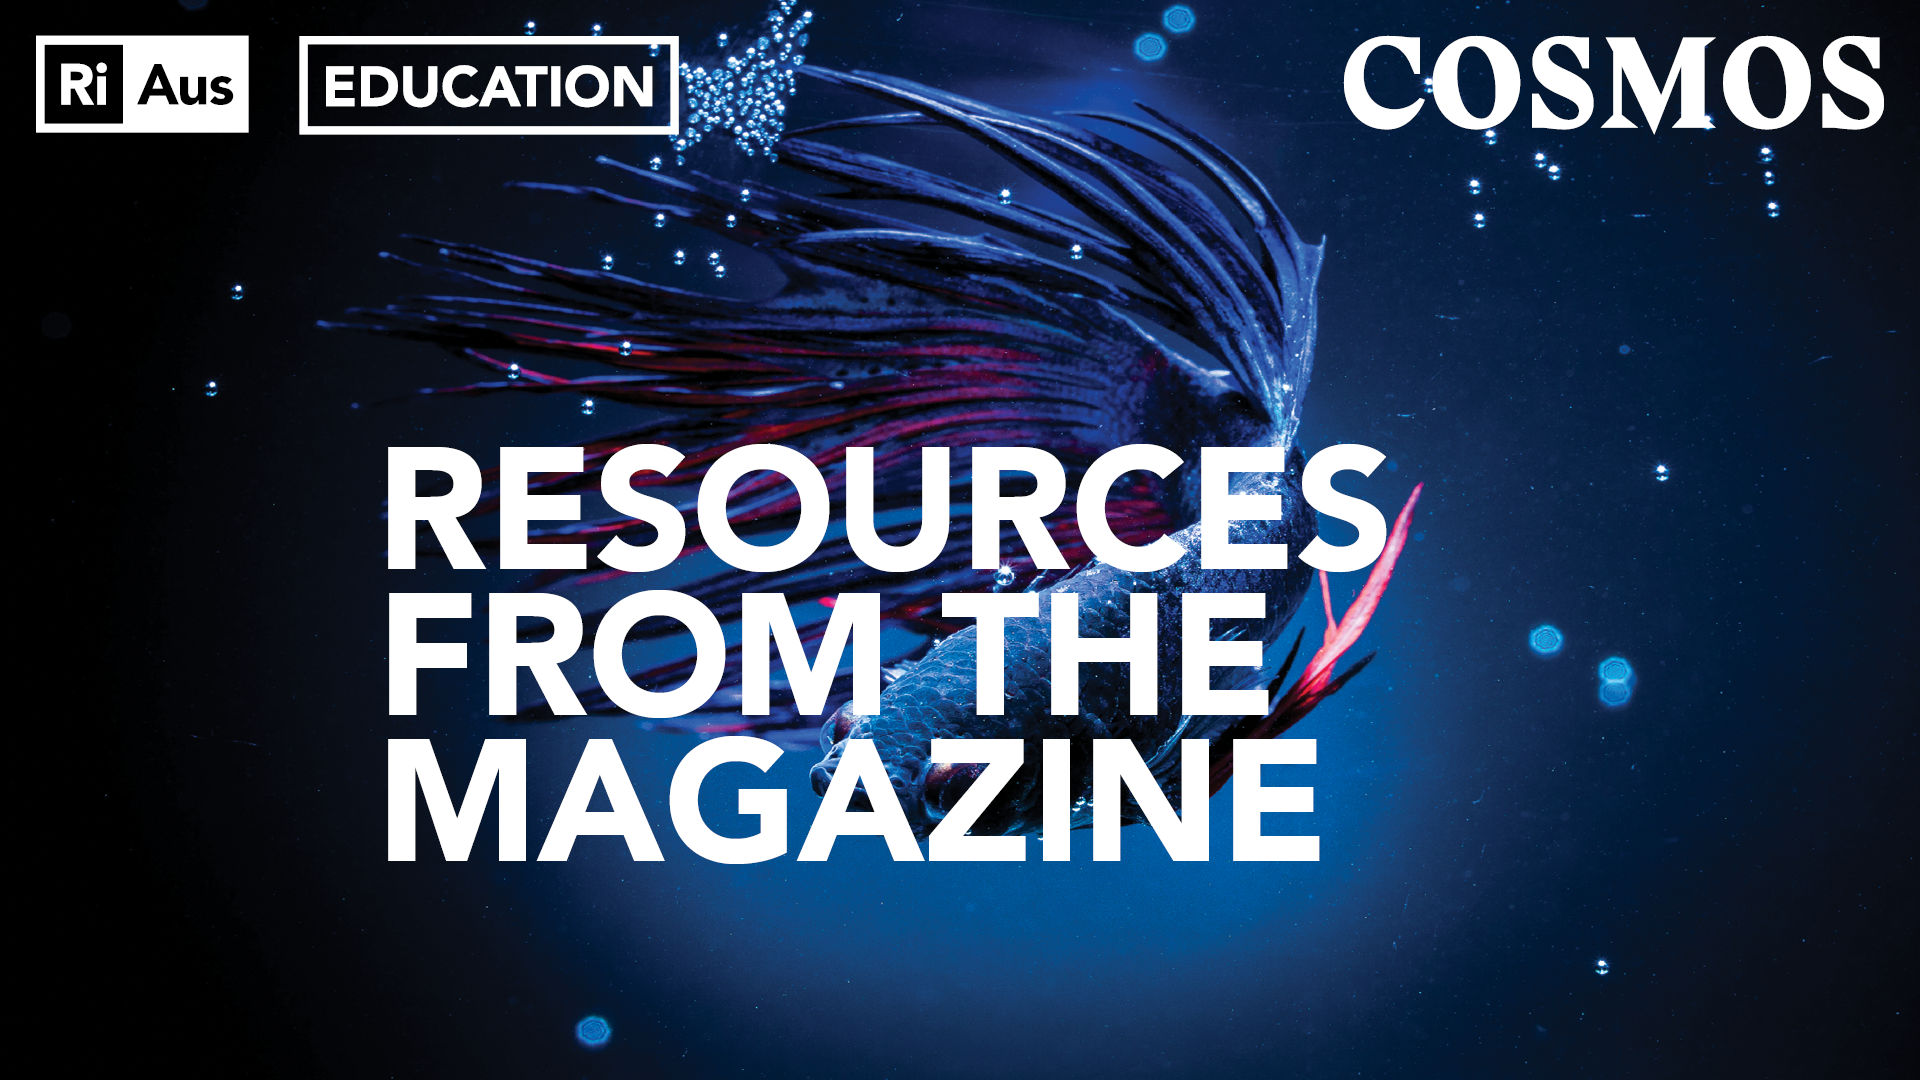 COSMOS Magazine Resources